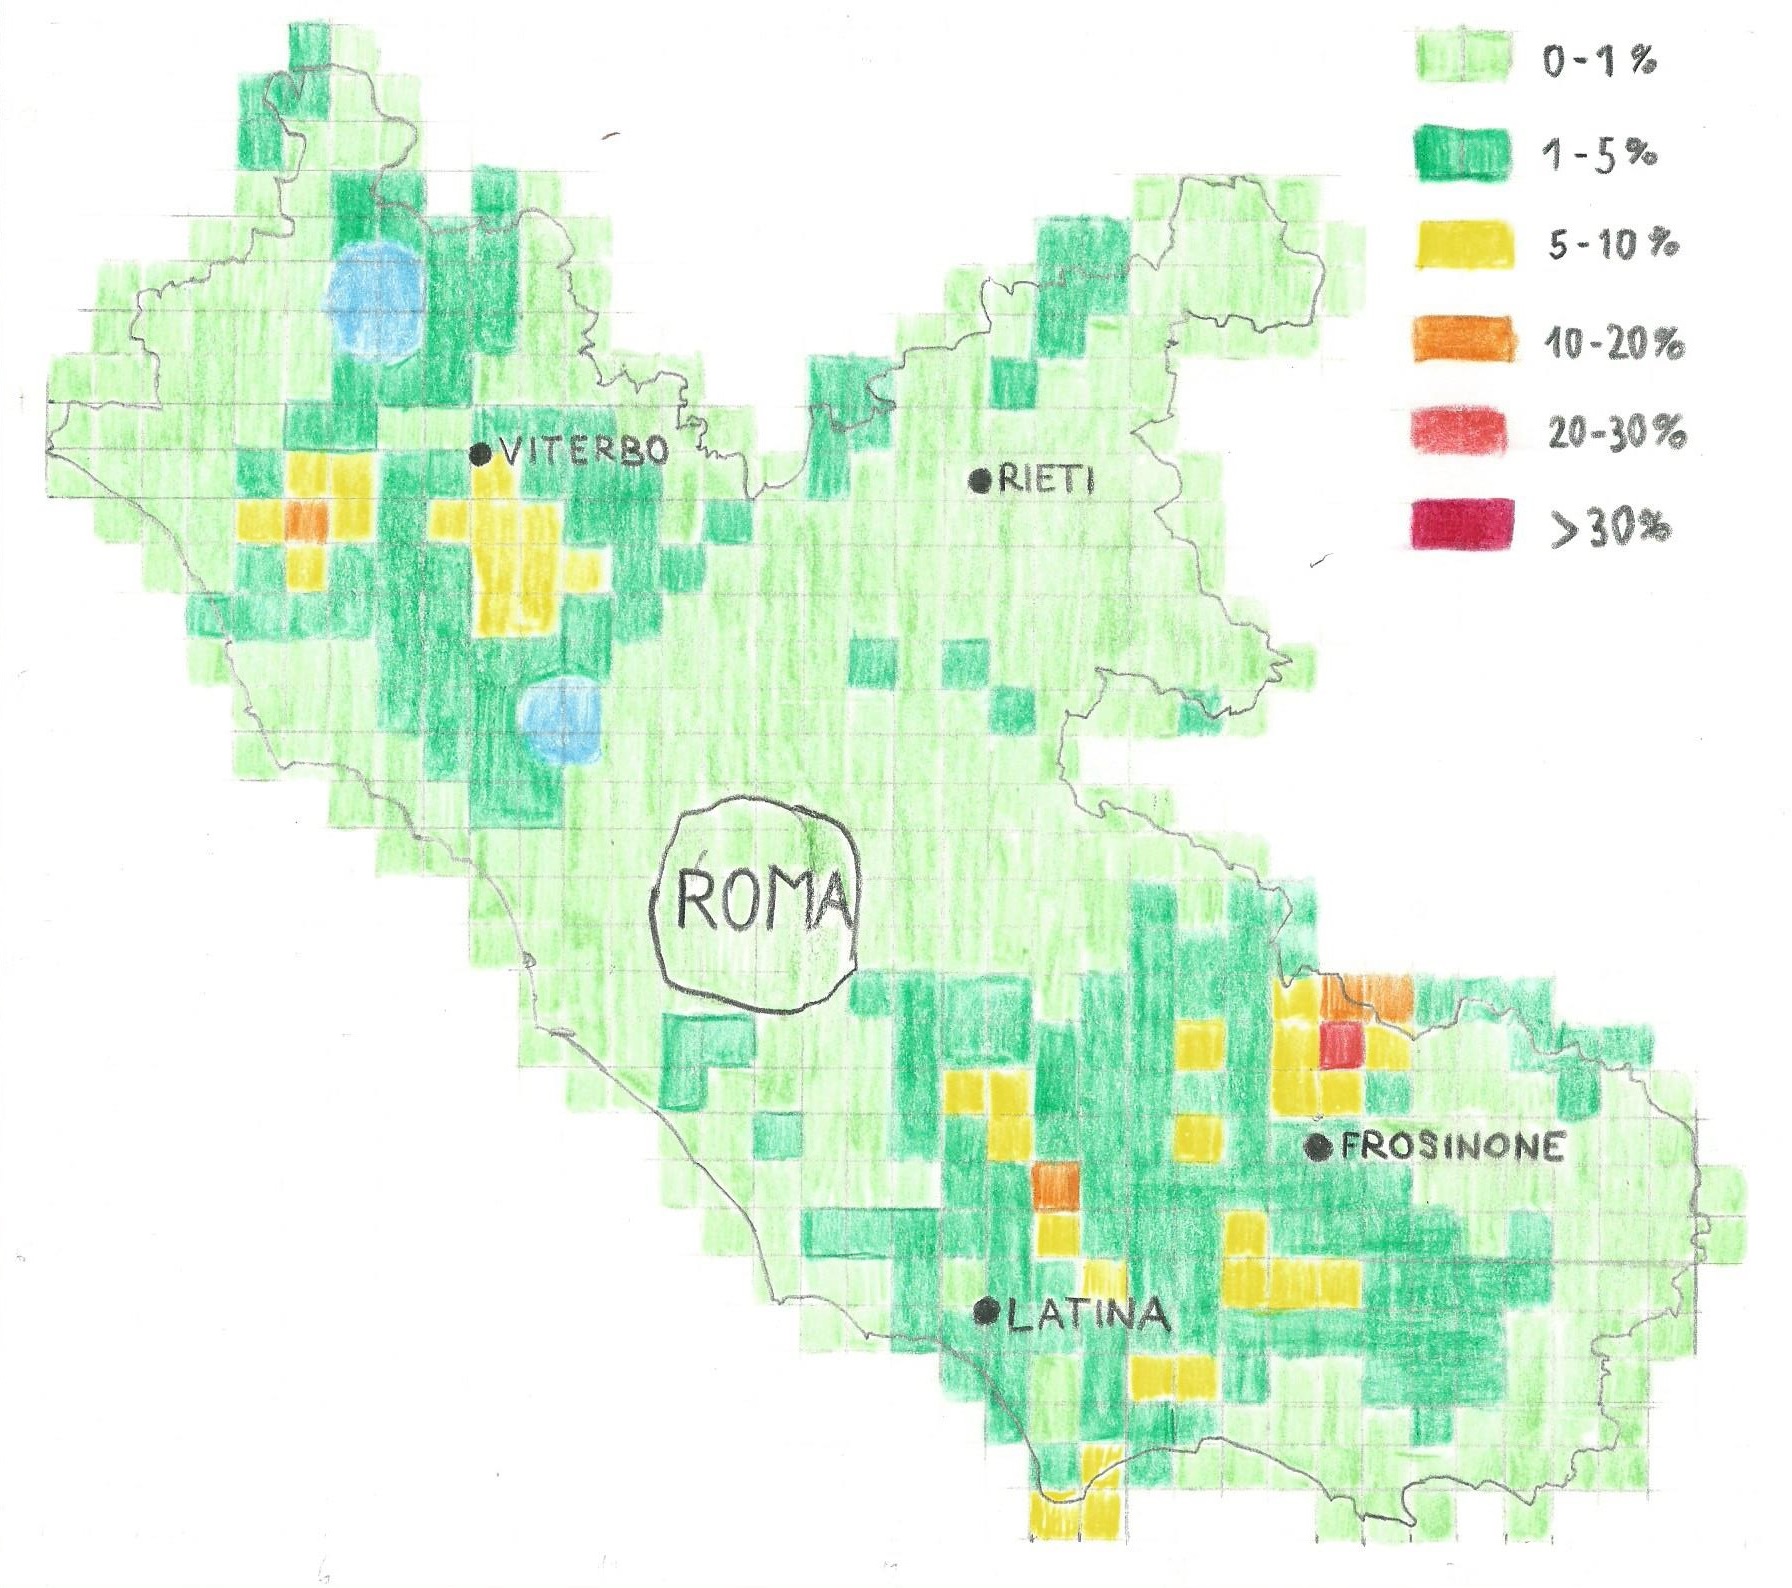 Lazio Mappa statistica della percentuale di abitazioni in cui la concentrazione di radon eccede i 500